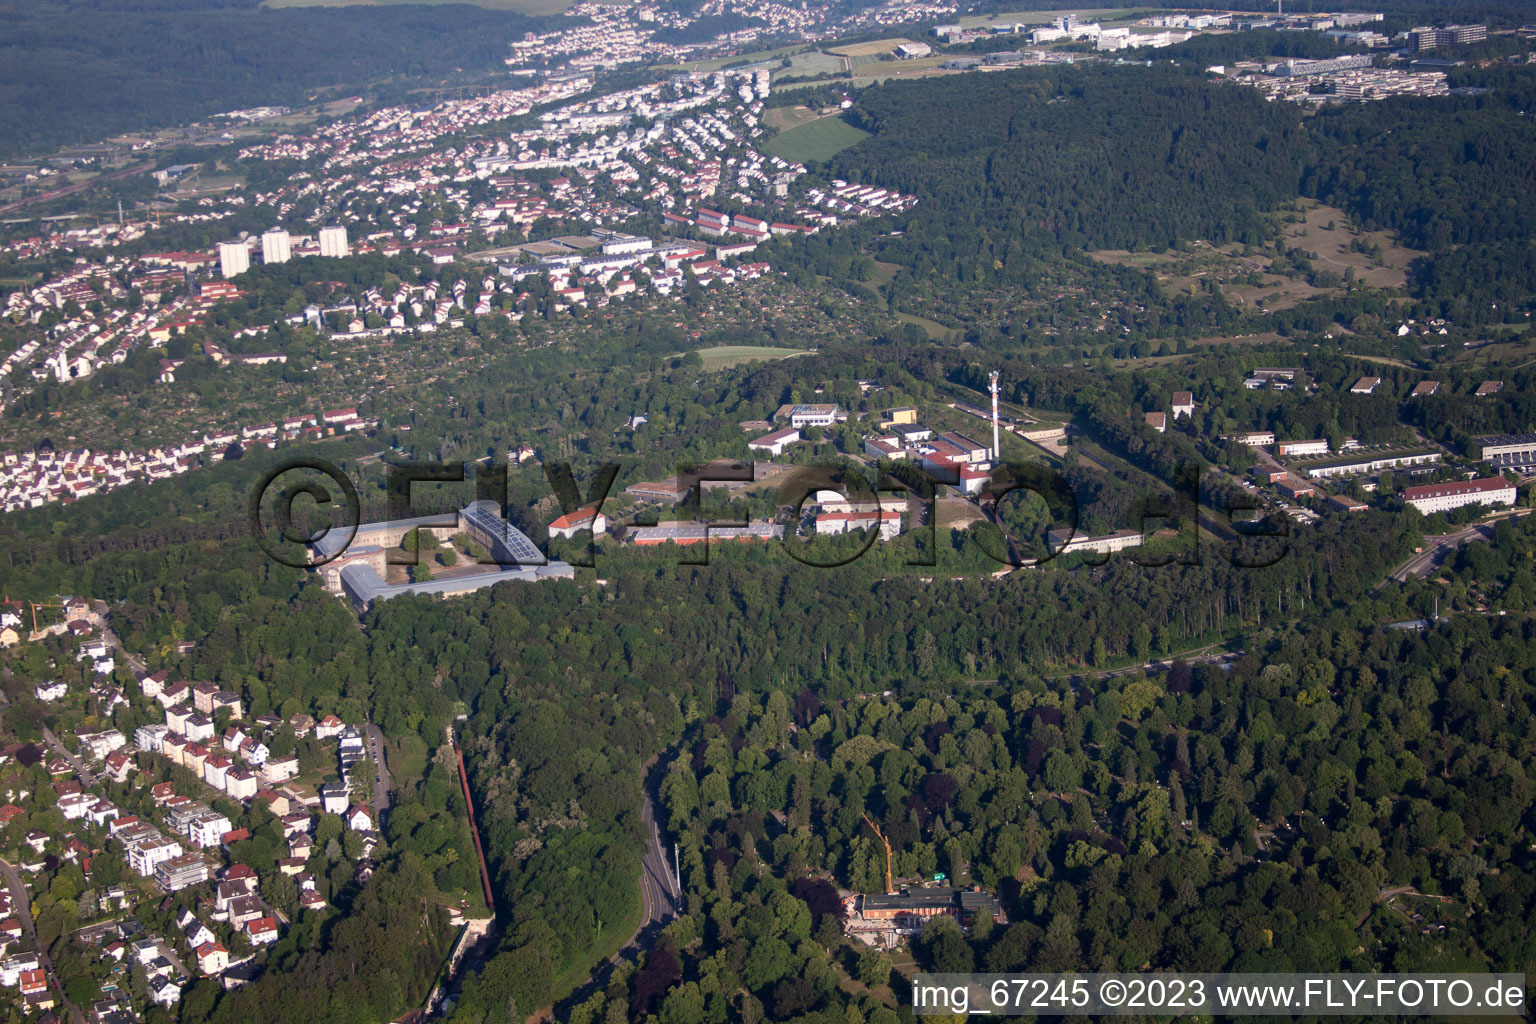 Ulm im Bundesland Baden-Württemberg, Deutschland von der Drohne aus gesehen